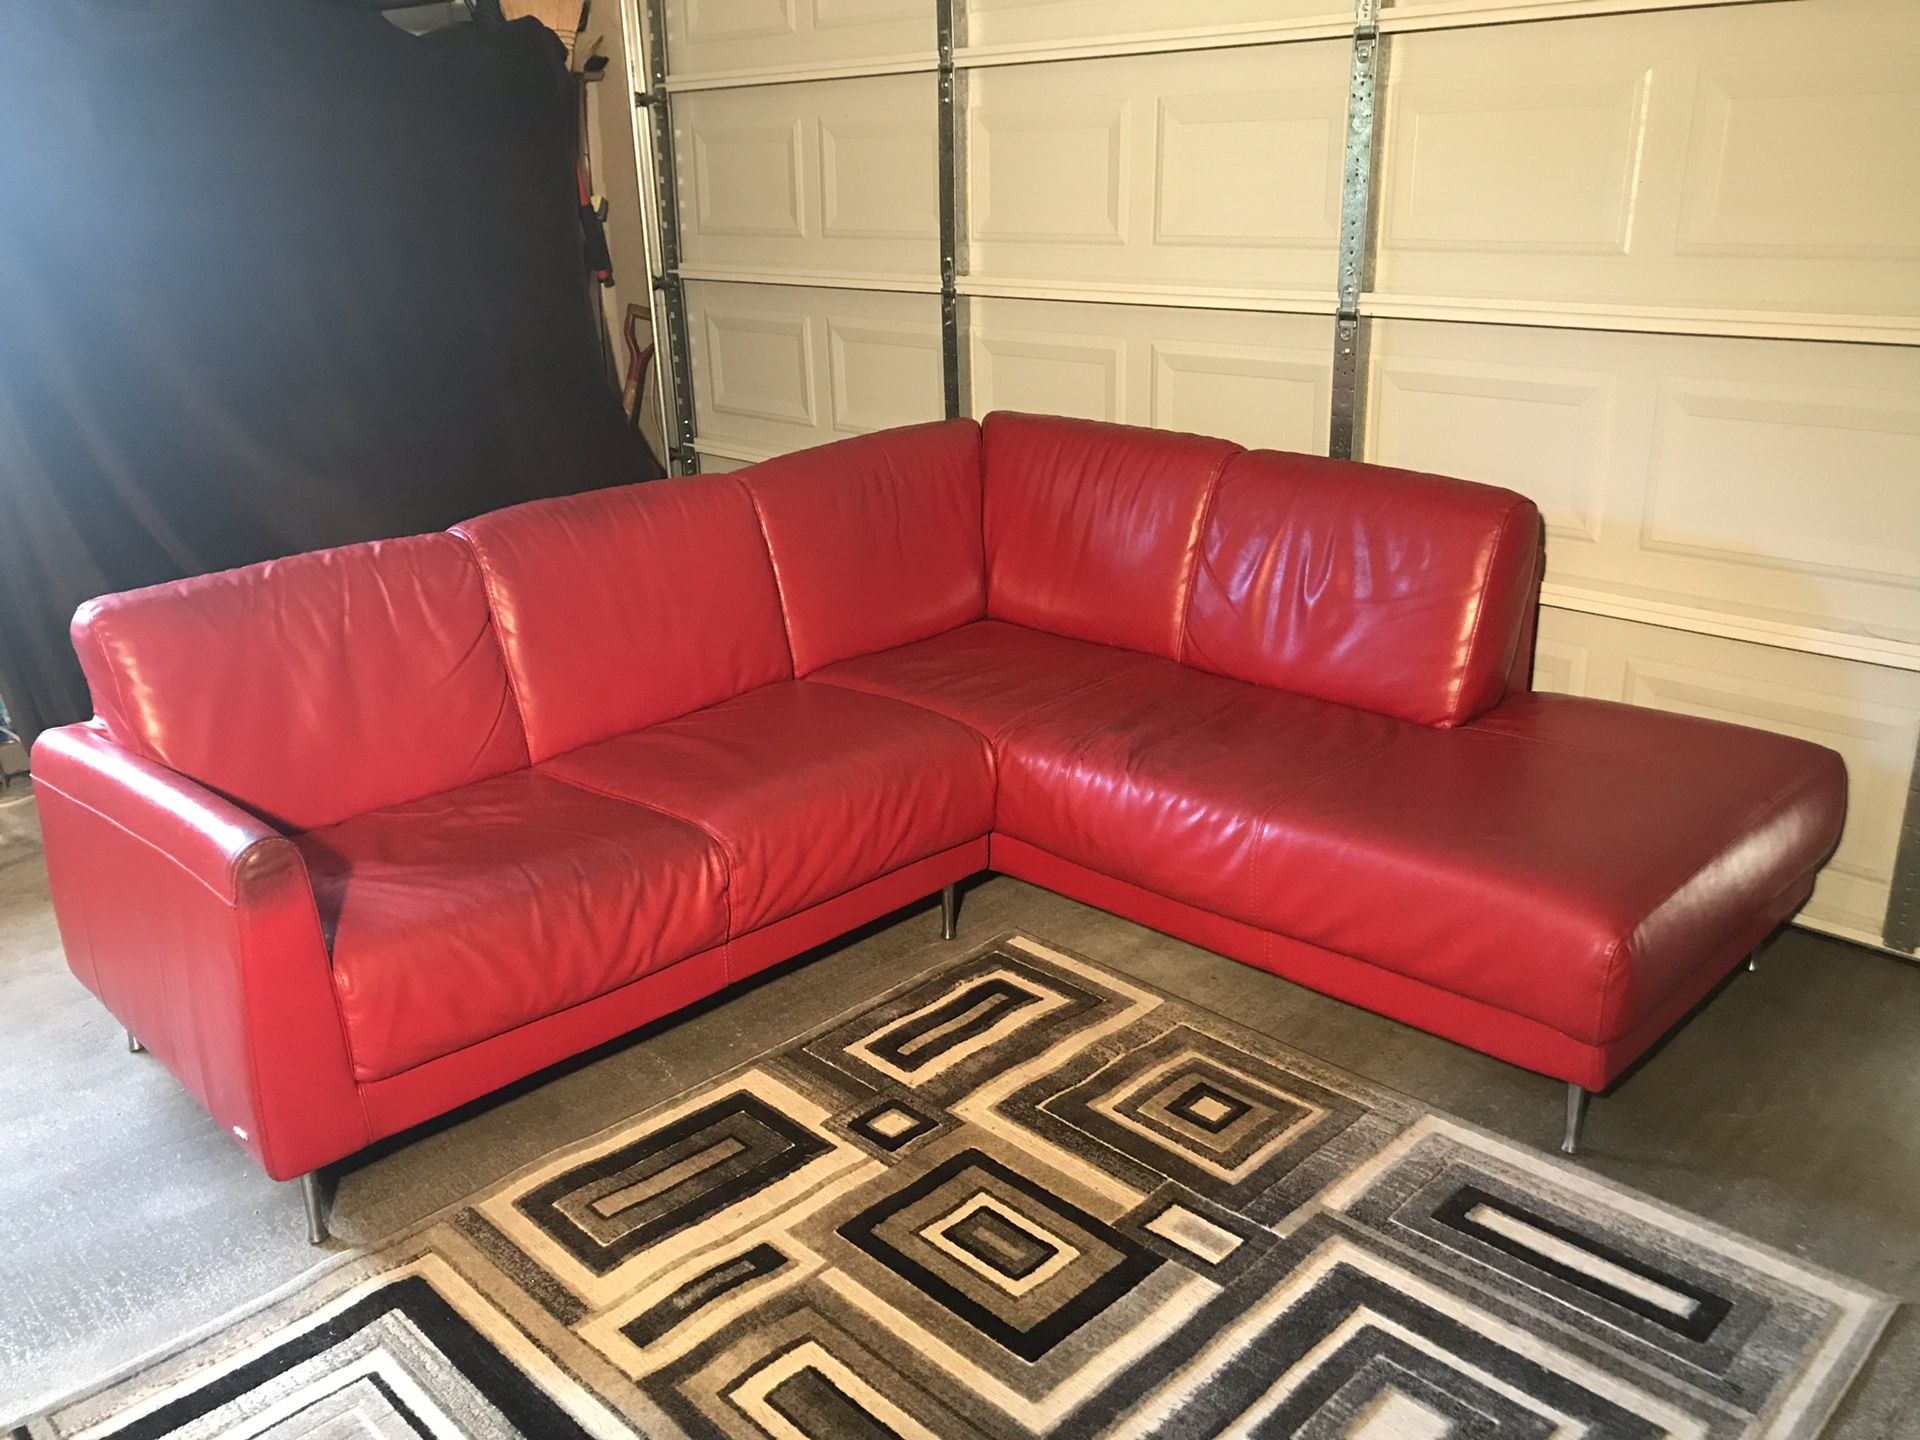 Natuzzi Red Leather Sofa from Kasala